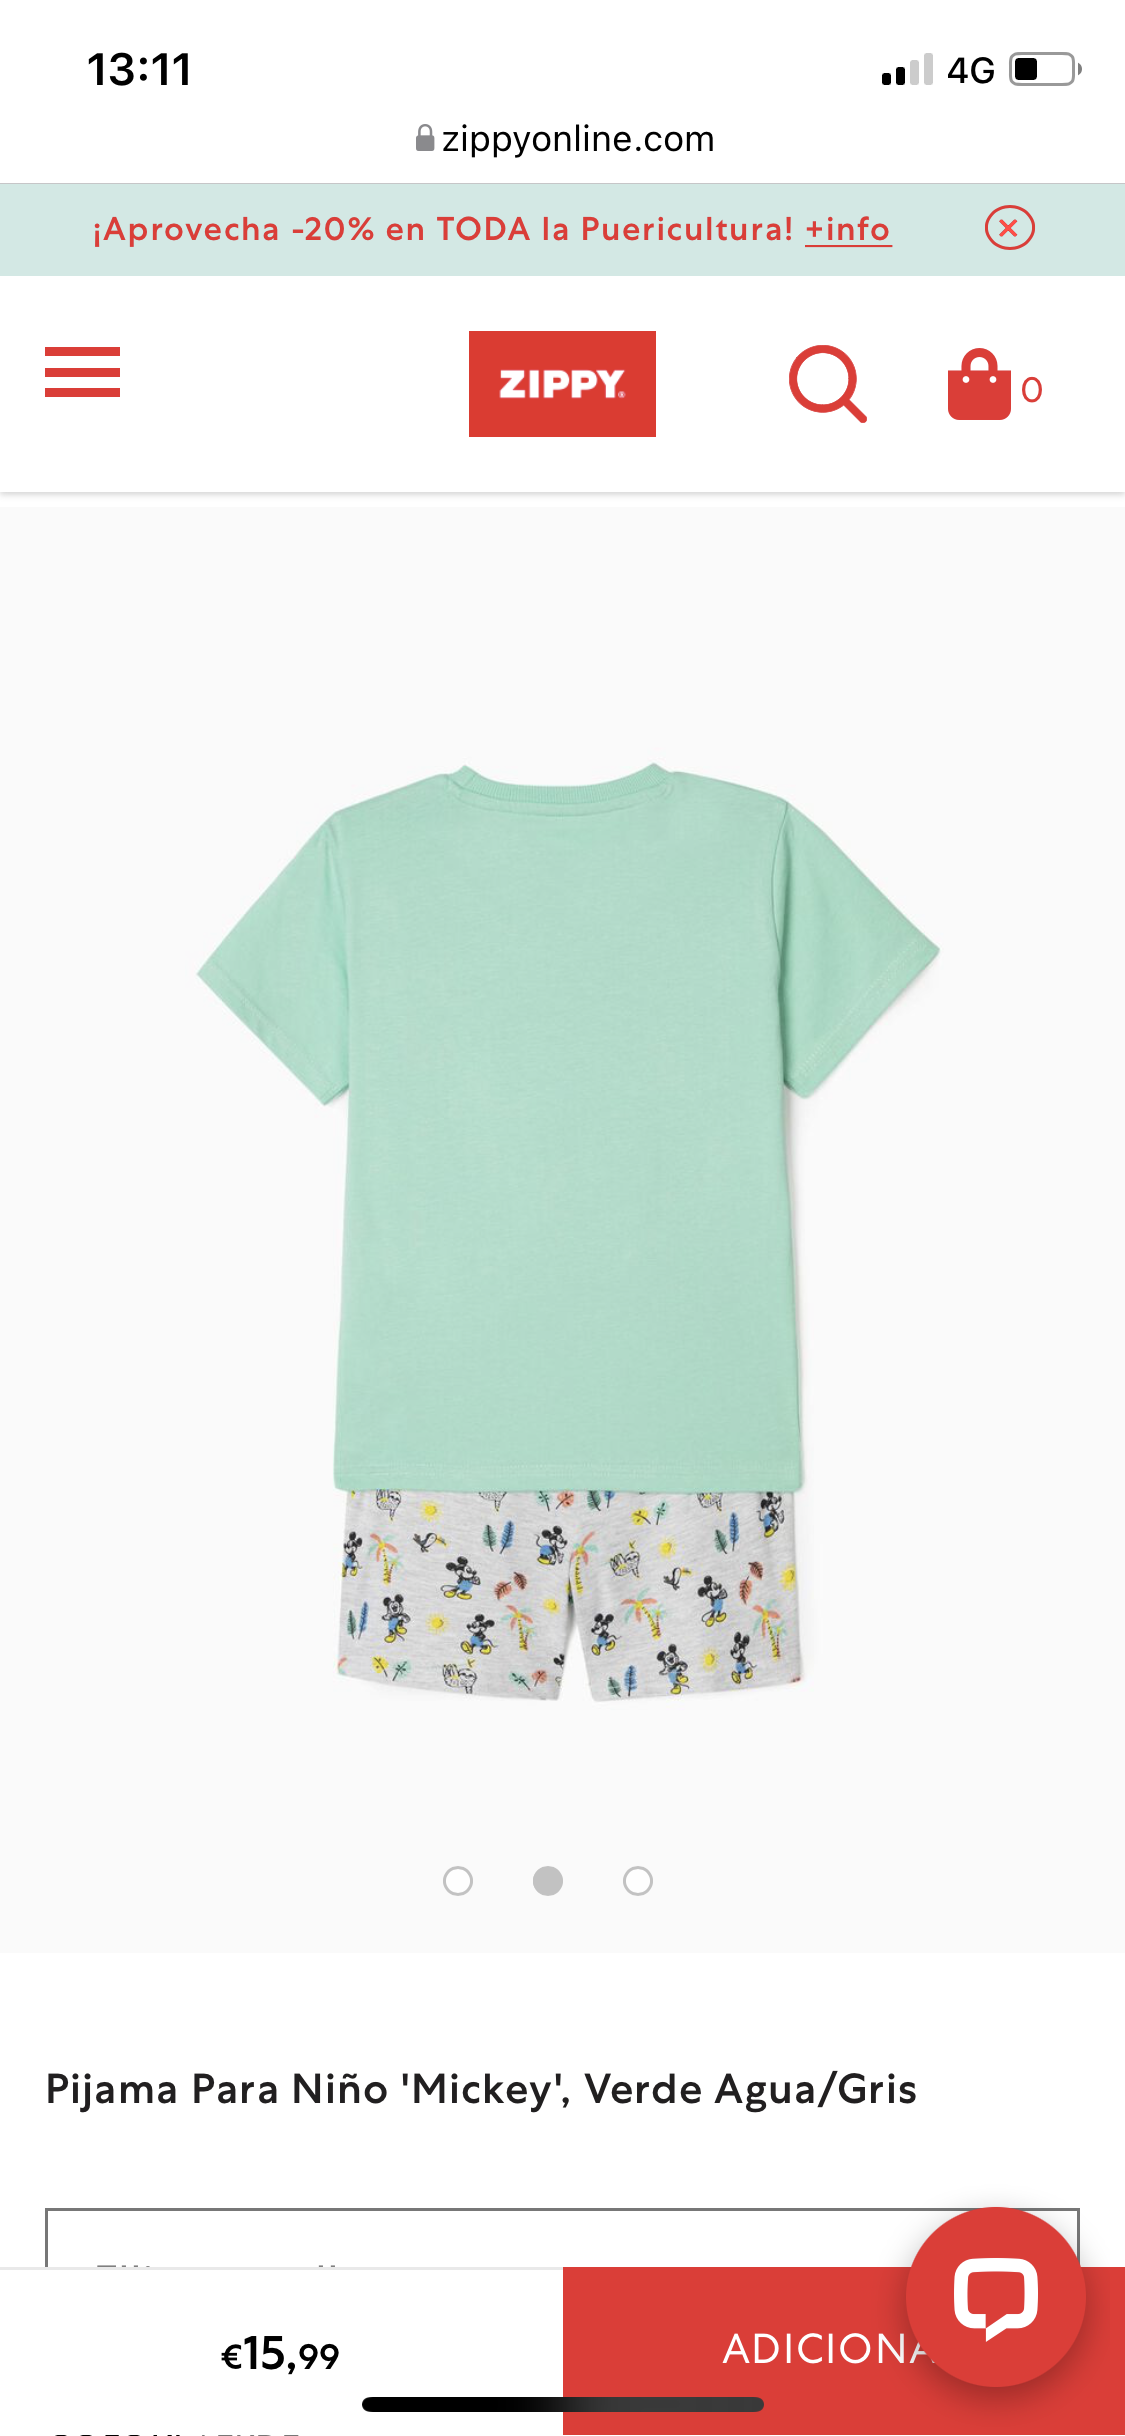 Pijama Para Niño 'Mickey', Verde Agua/Gris lolimariscalmoda 15.99